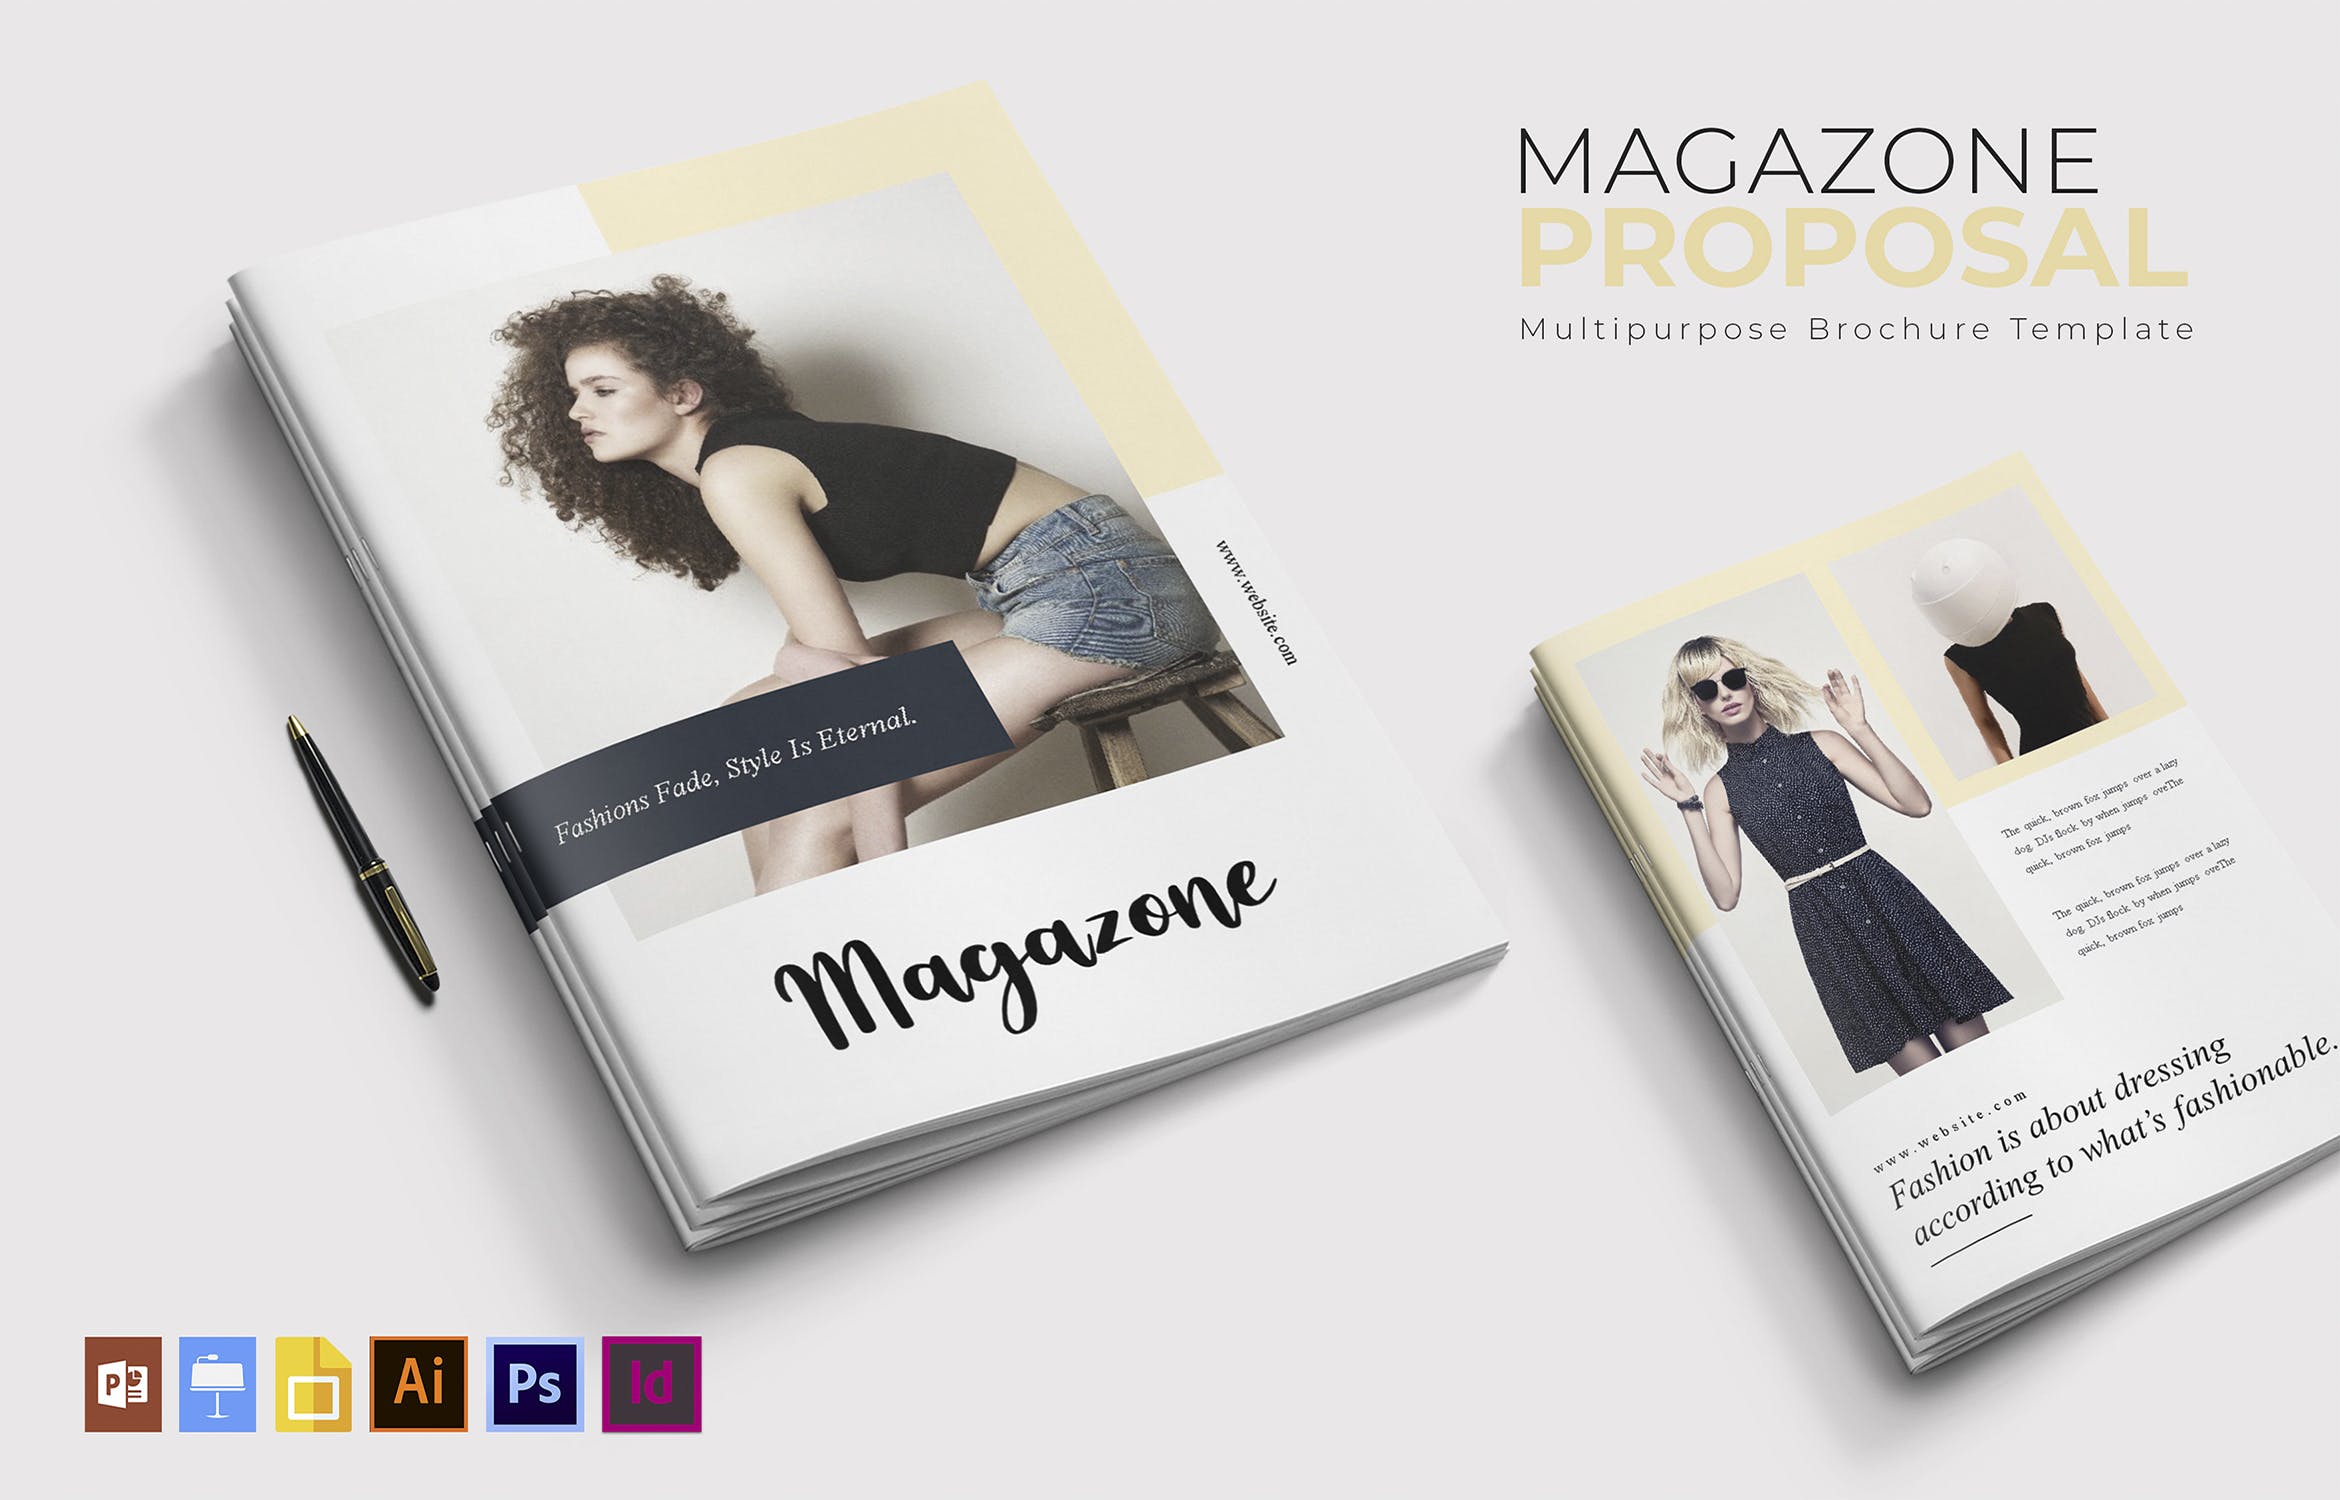 时尚品牌宣传画册/素材库精选杂志排版设计模板 Magazone | Brochure插图(2)